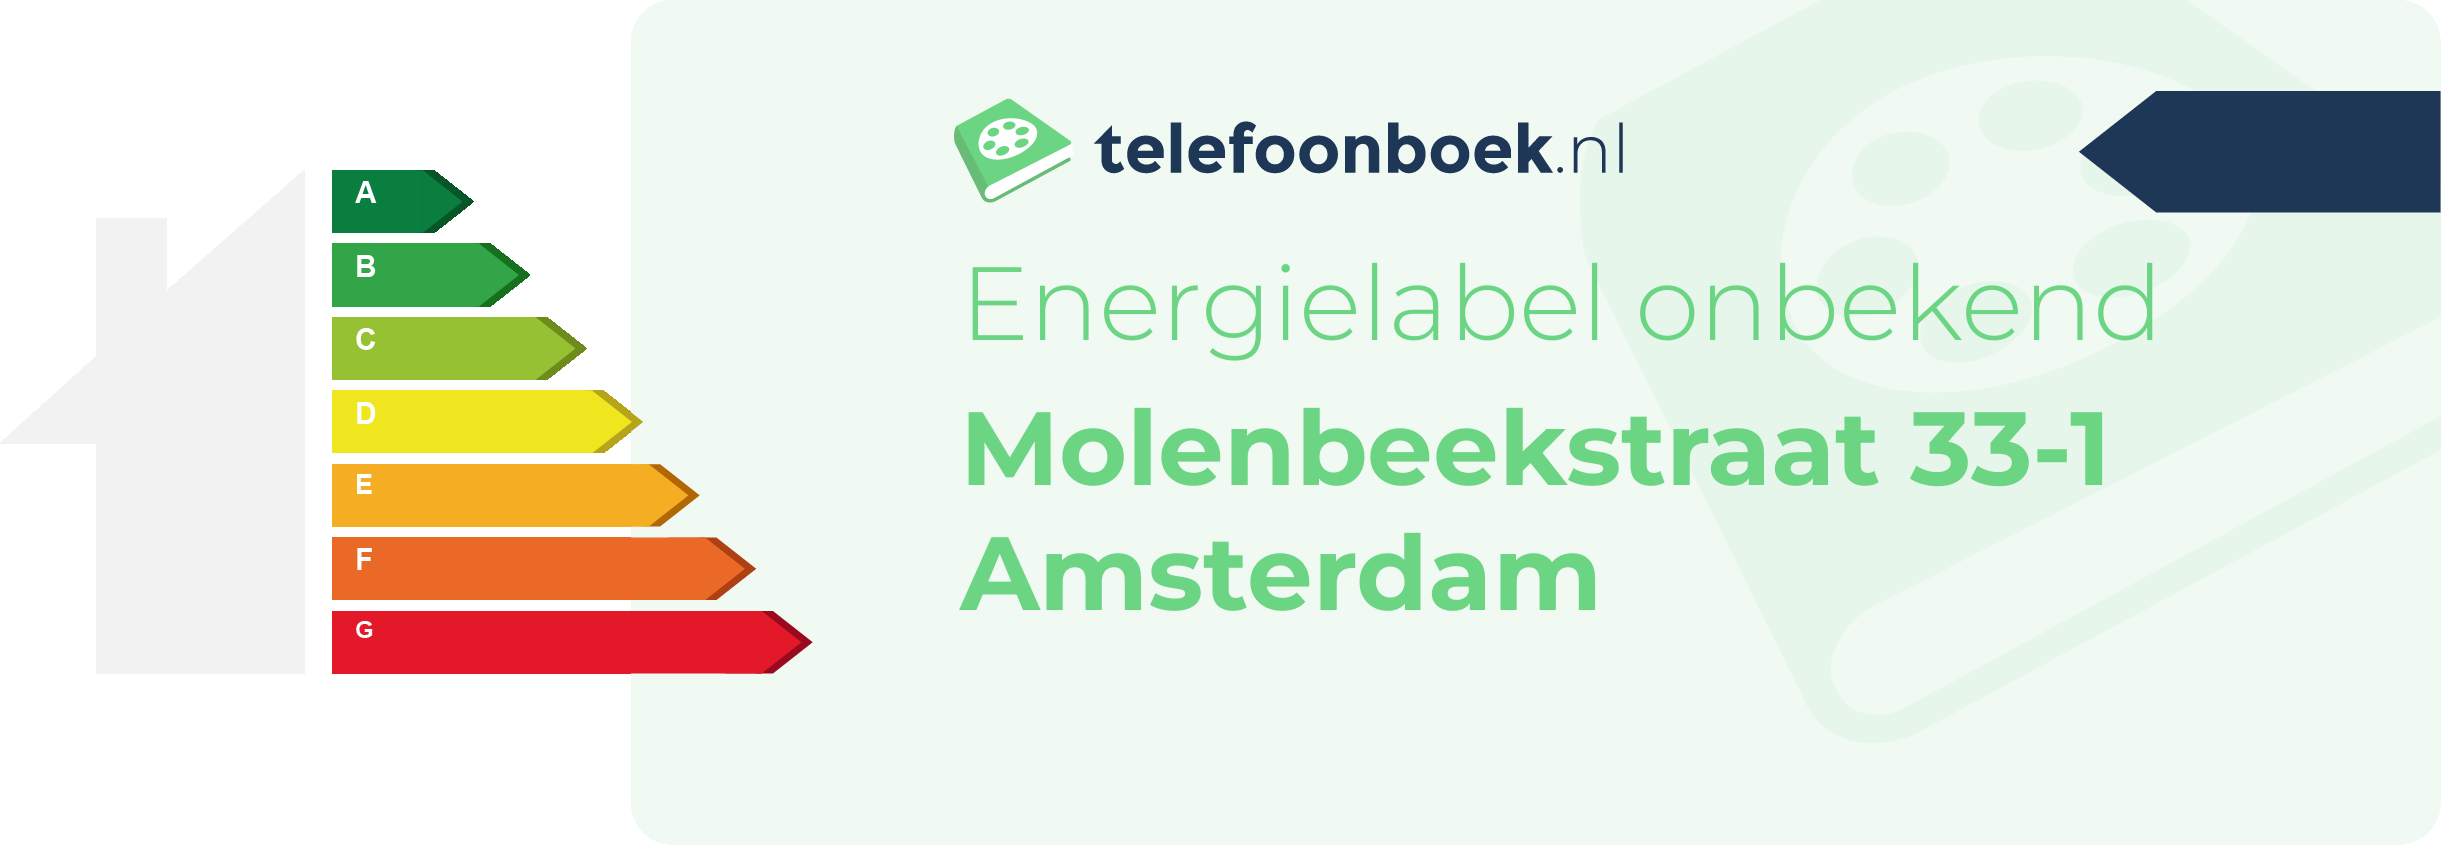 Energielabel Molenbeekstraat 33-1 Amsterdam